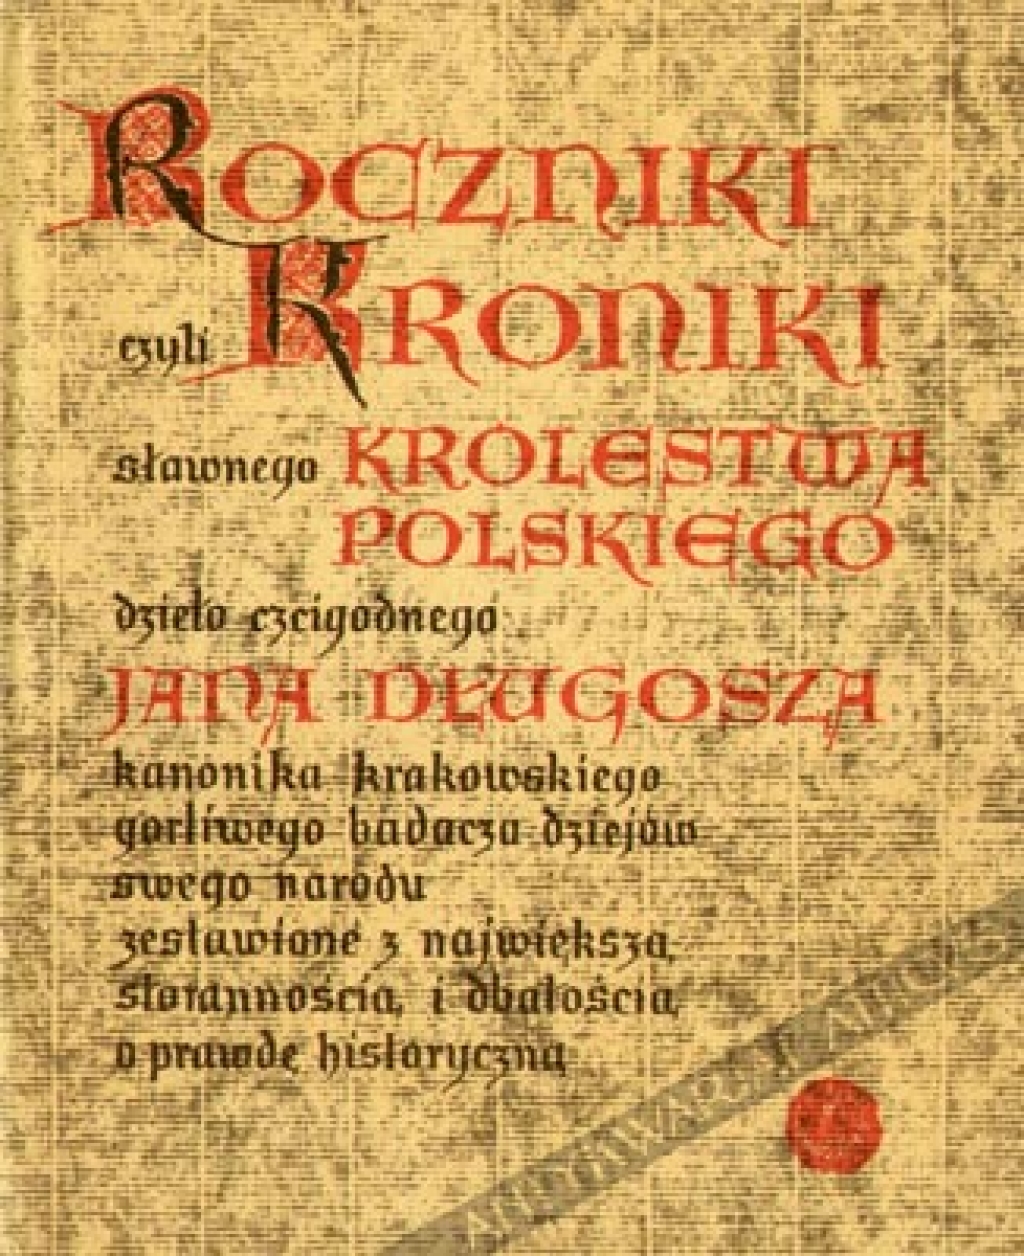 Roczniki czyli kroniki sławnego Królestwa Polskiego, księga dziesiąta (1370-1405)